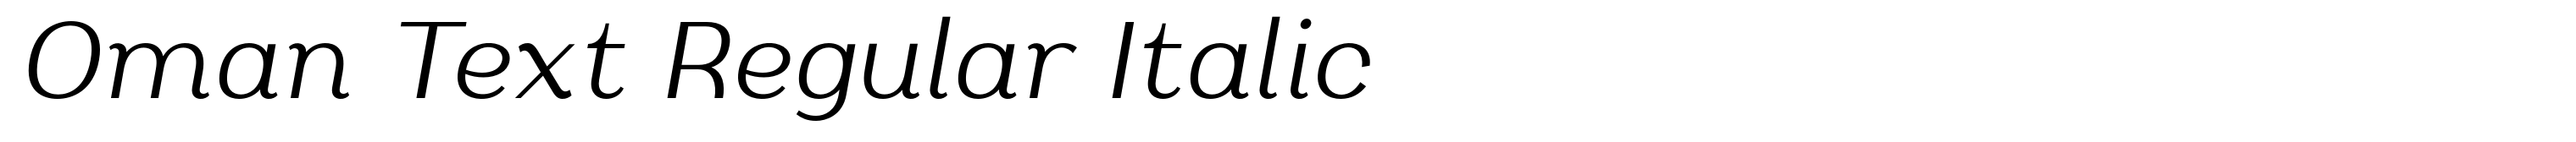 Oman Text Regular Italic